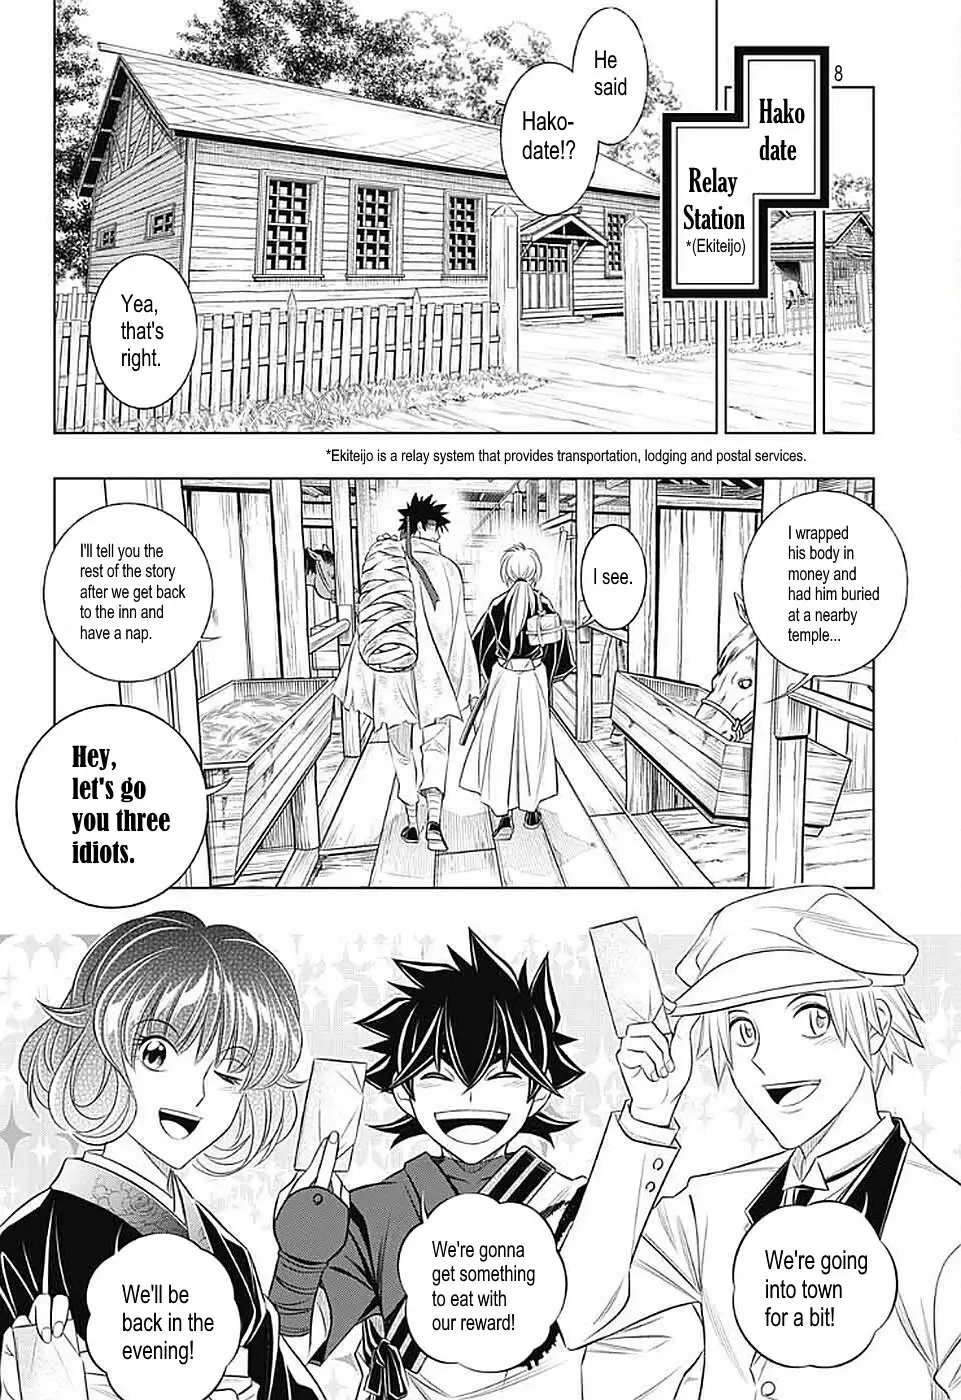 Rurouni Kenshin: Hokkaido Arc - 35 page 8